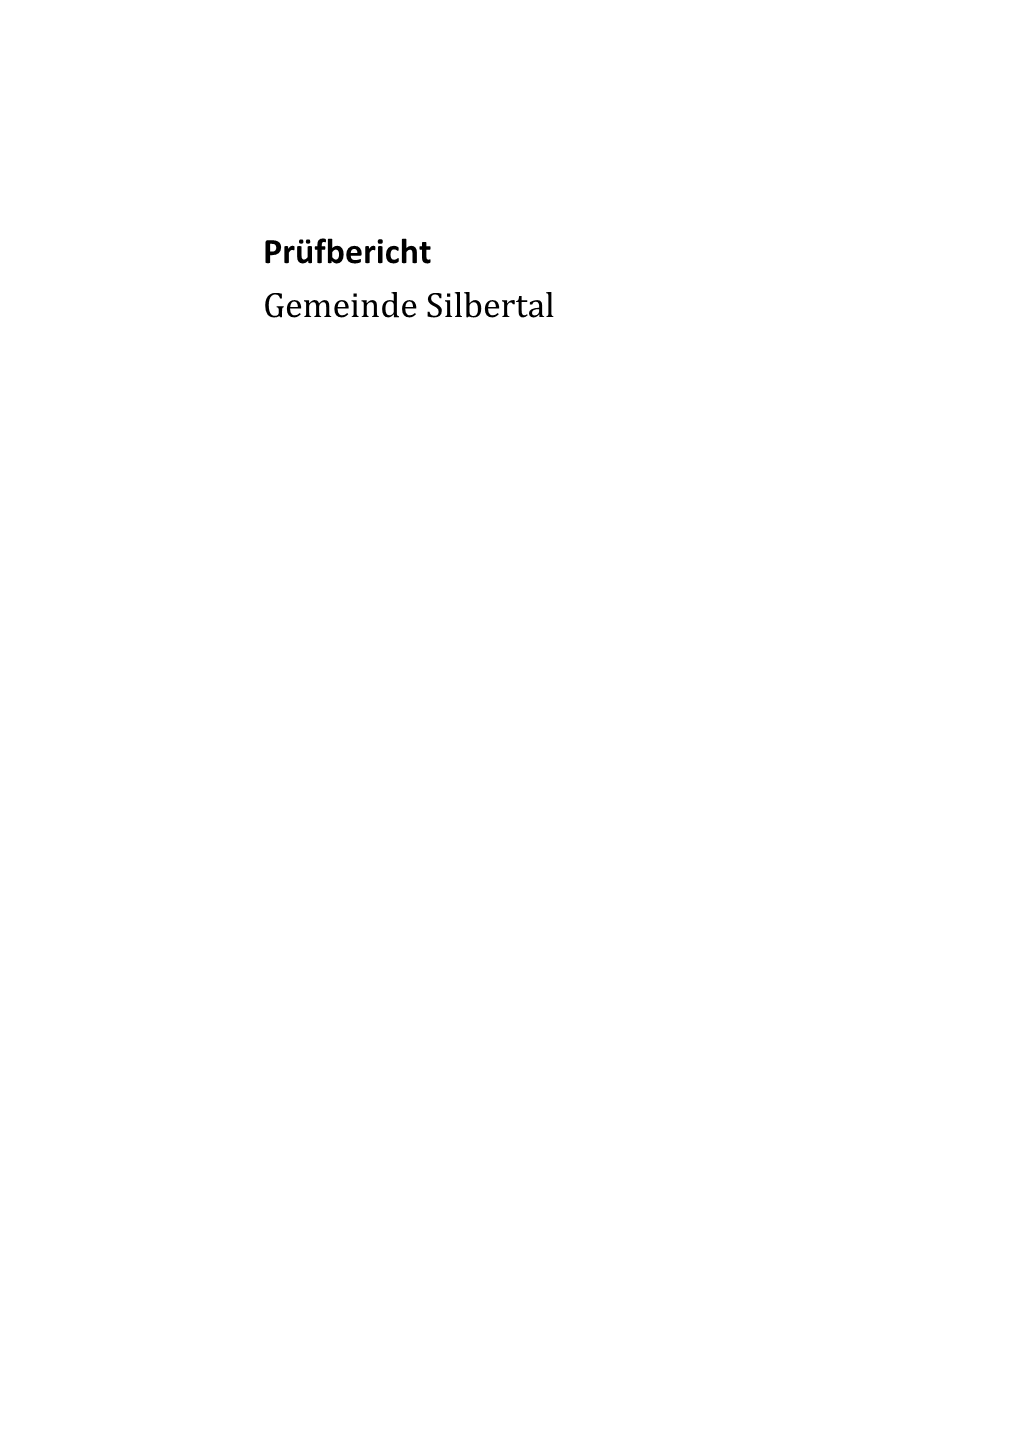 Prüfbericht Gemeinde Silbertal PDF, 352 Kb